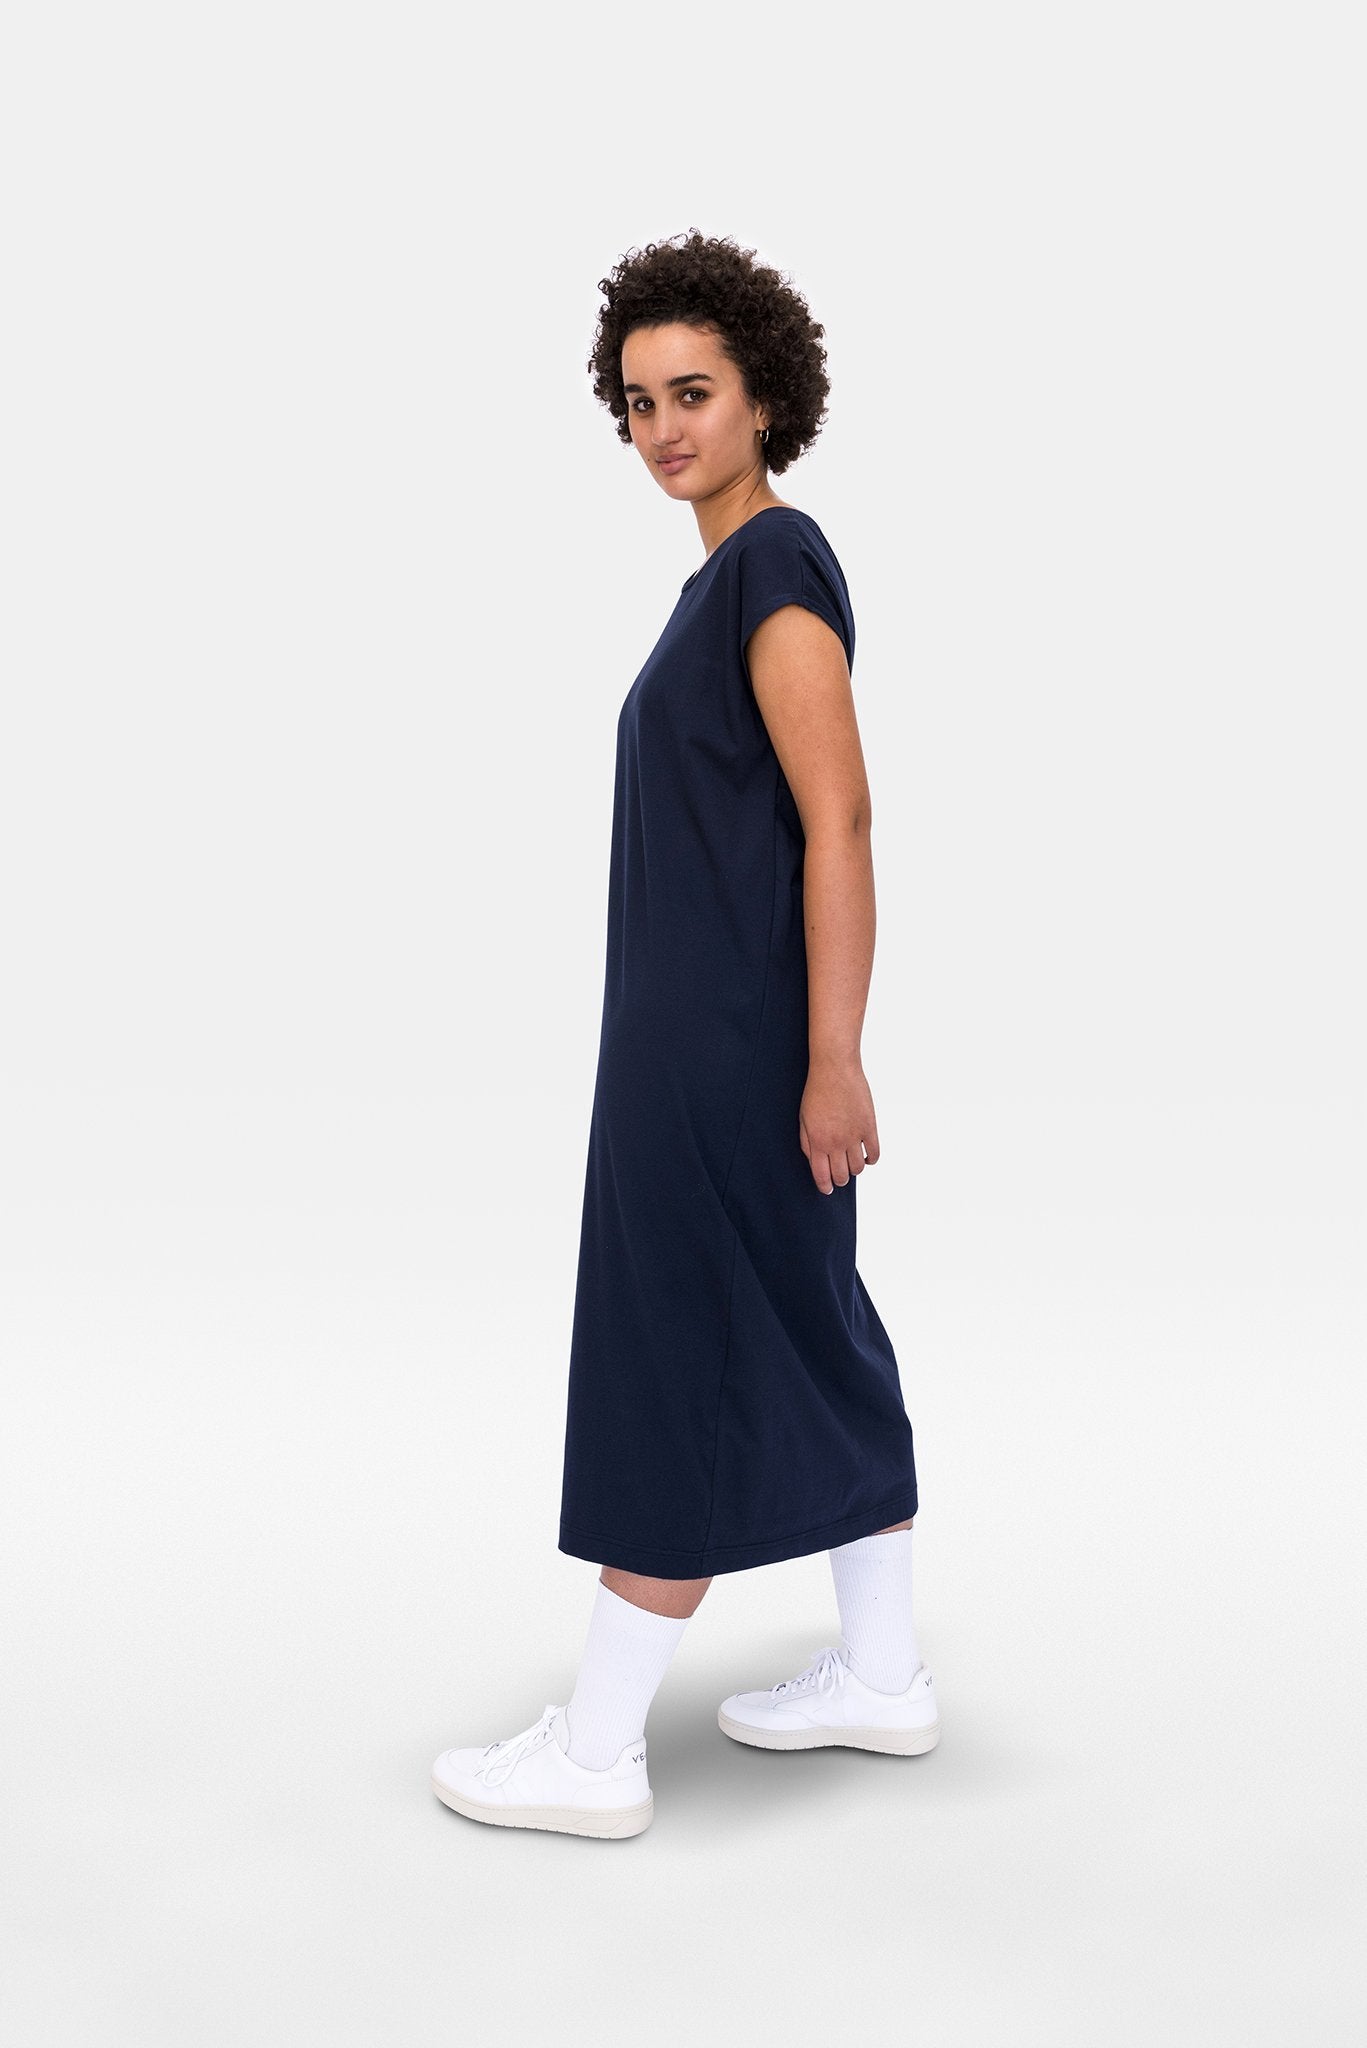 A.BCH A.07 Navy T-Shirt Dress in Organic Cotton